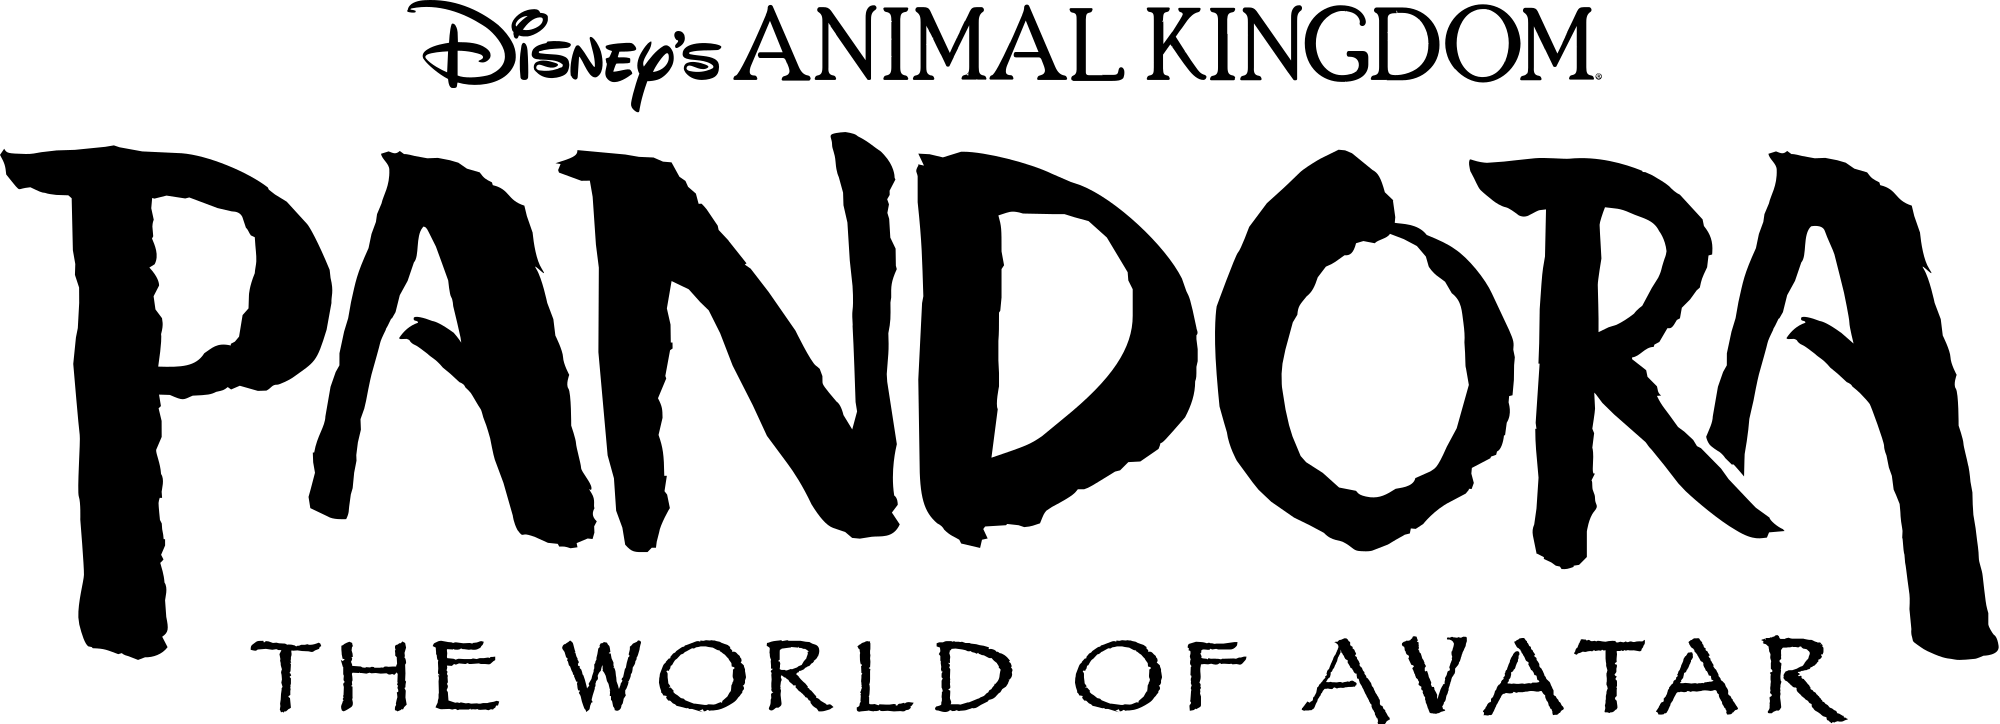 Animal Kingdom Logo - File:Pandora logo black with Disney's Animal Kingdom.svg - Wikimedia ...